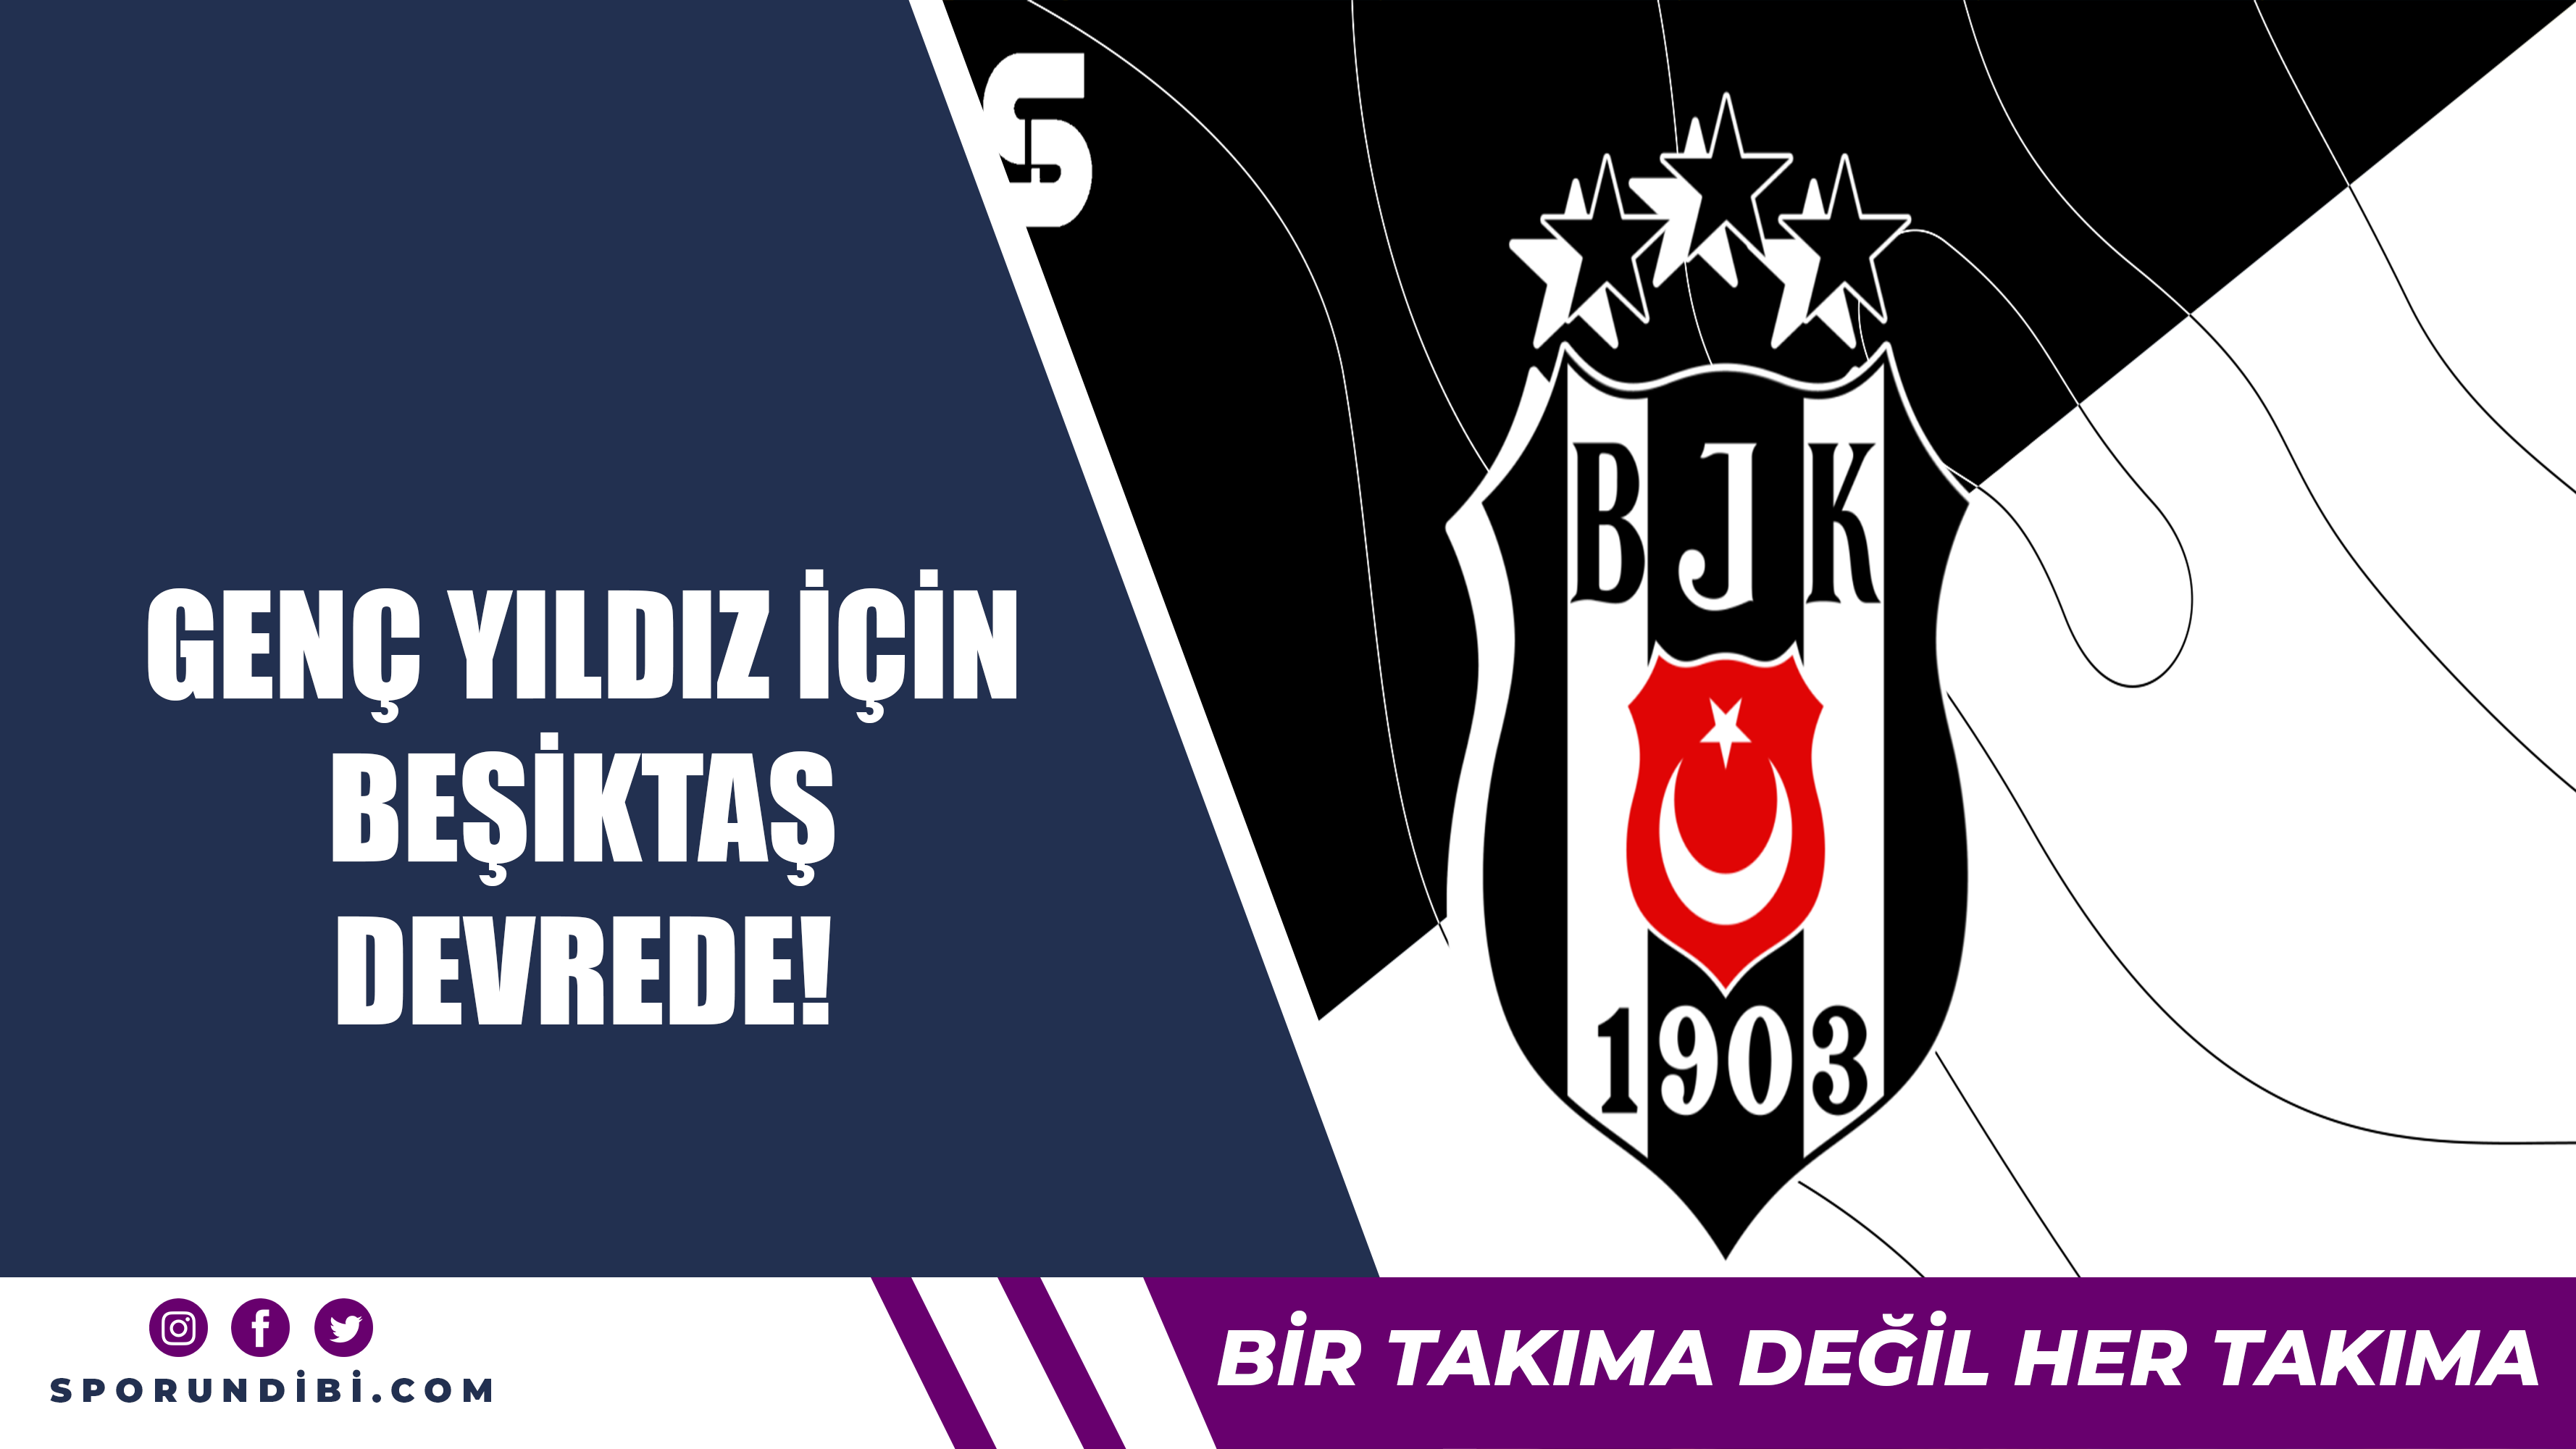 Genç yıldız için Beşiktaş devrede!